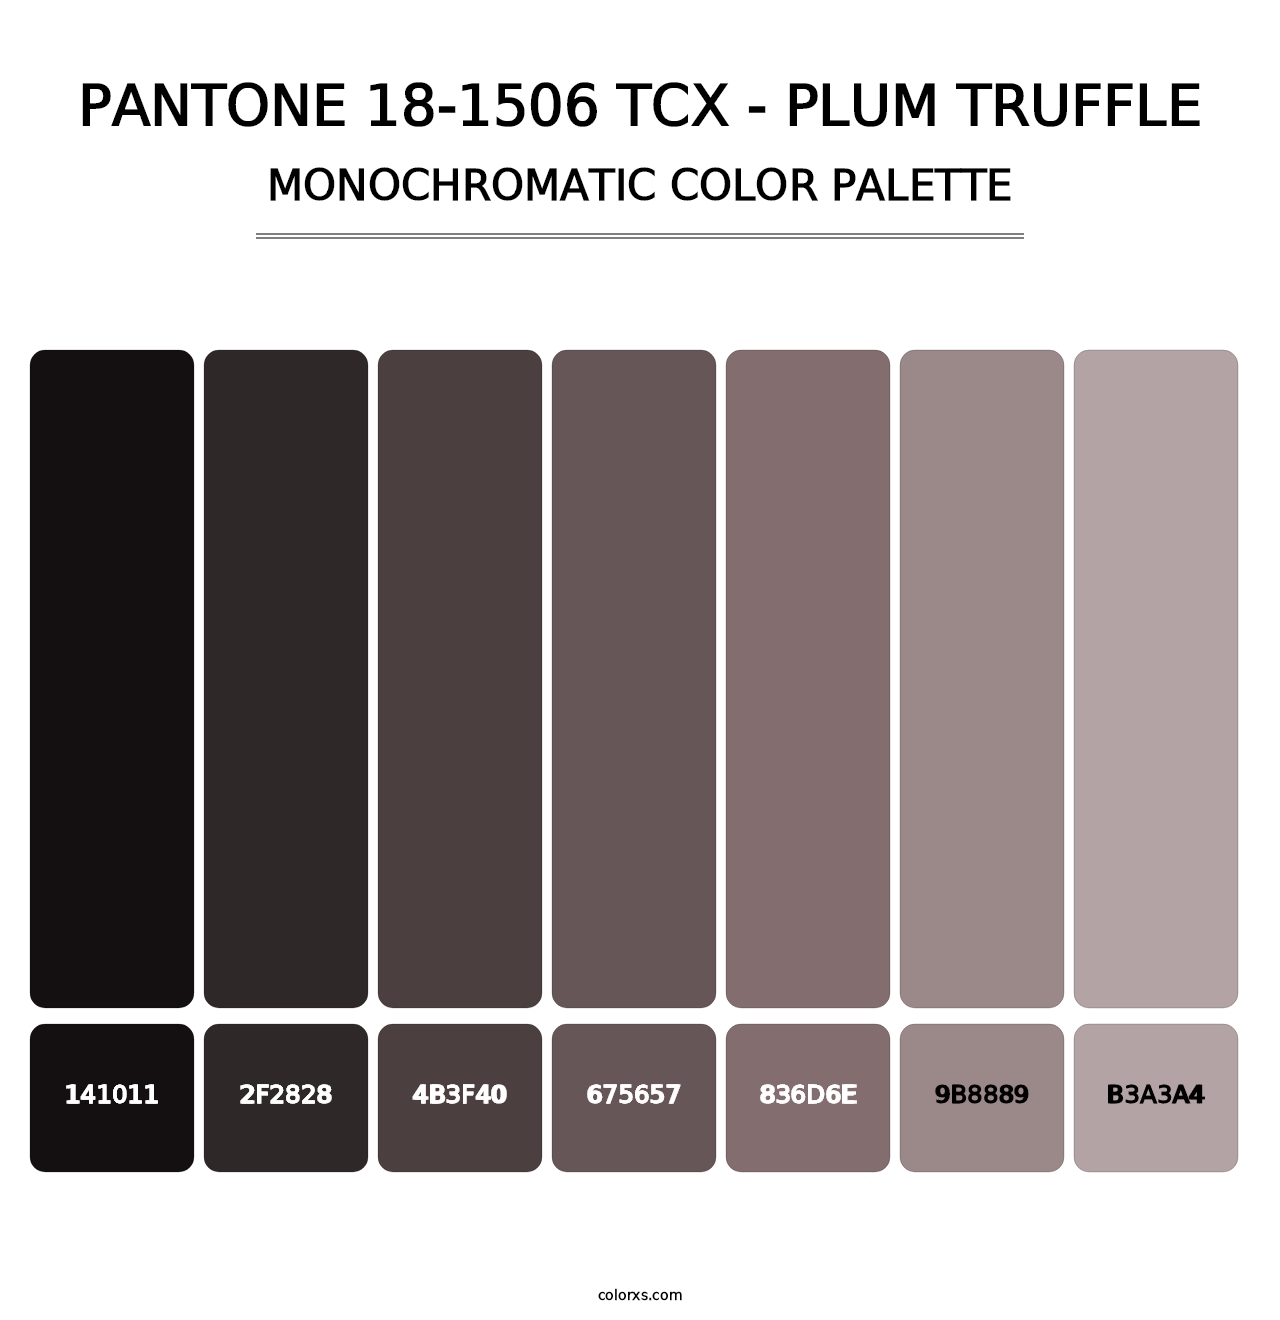 PANTONE 18-1506 TCX - Plum Truffle - Monochromatic Color Palette